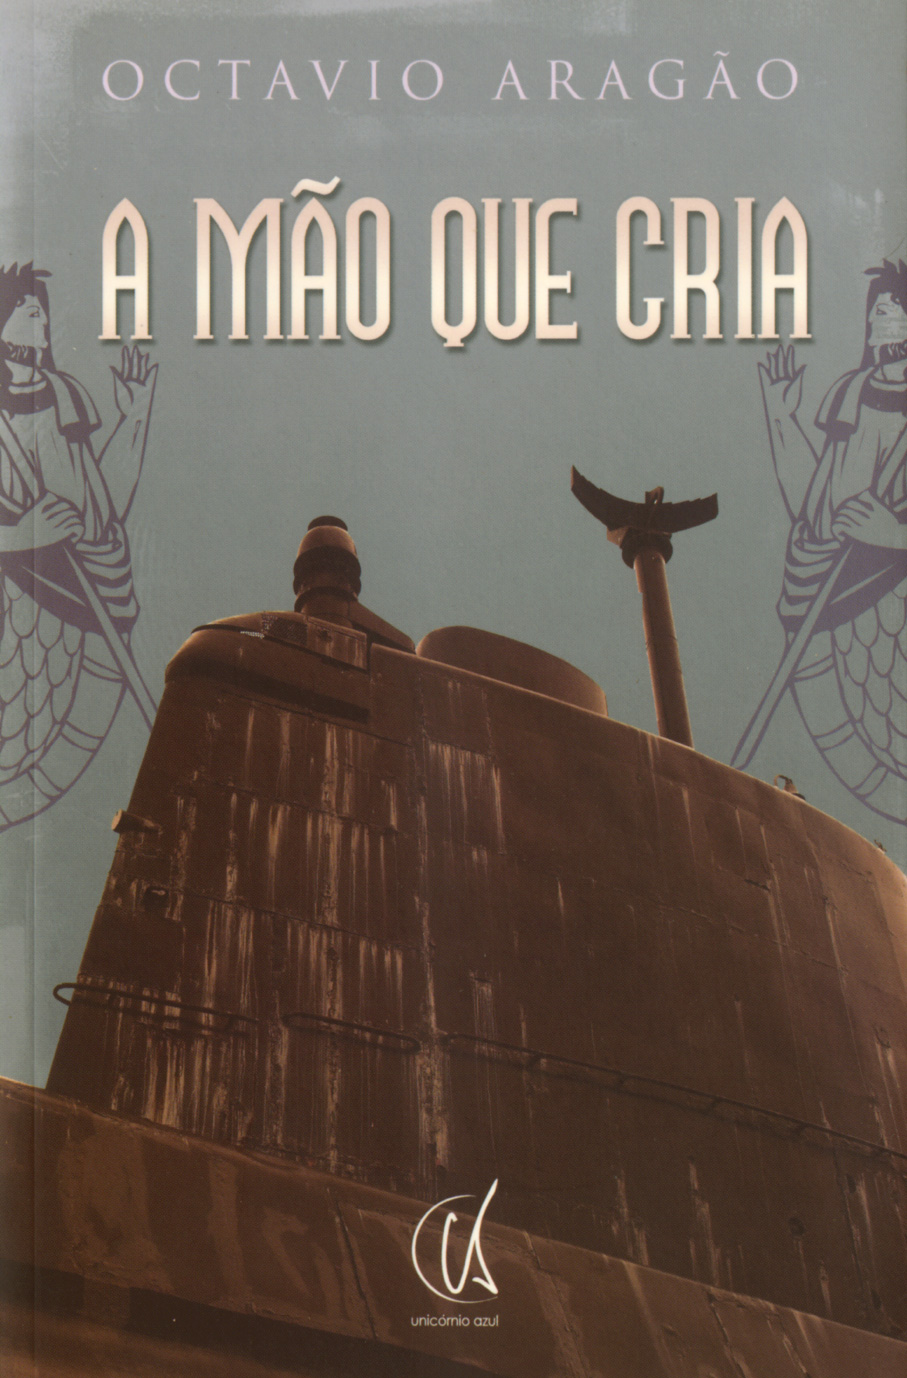 Existiu outra humanidade (Portuguese Edition) by J.J. Benítez